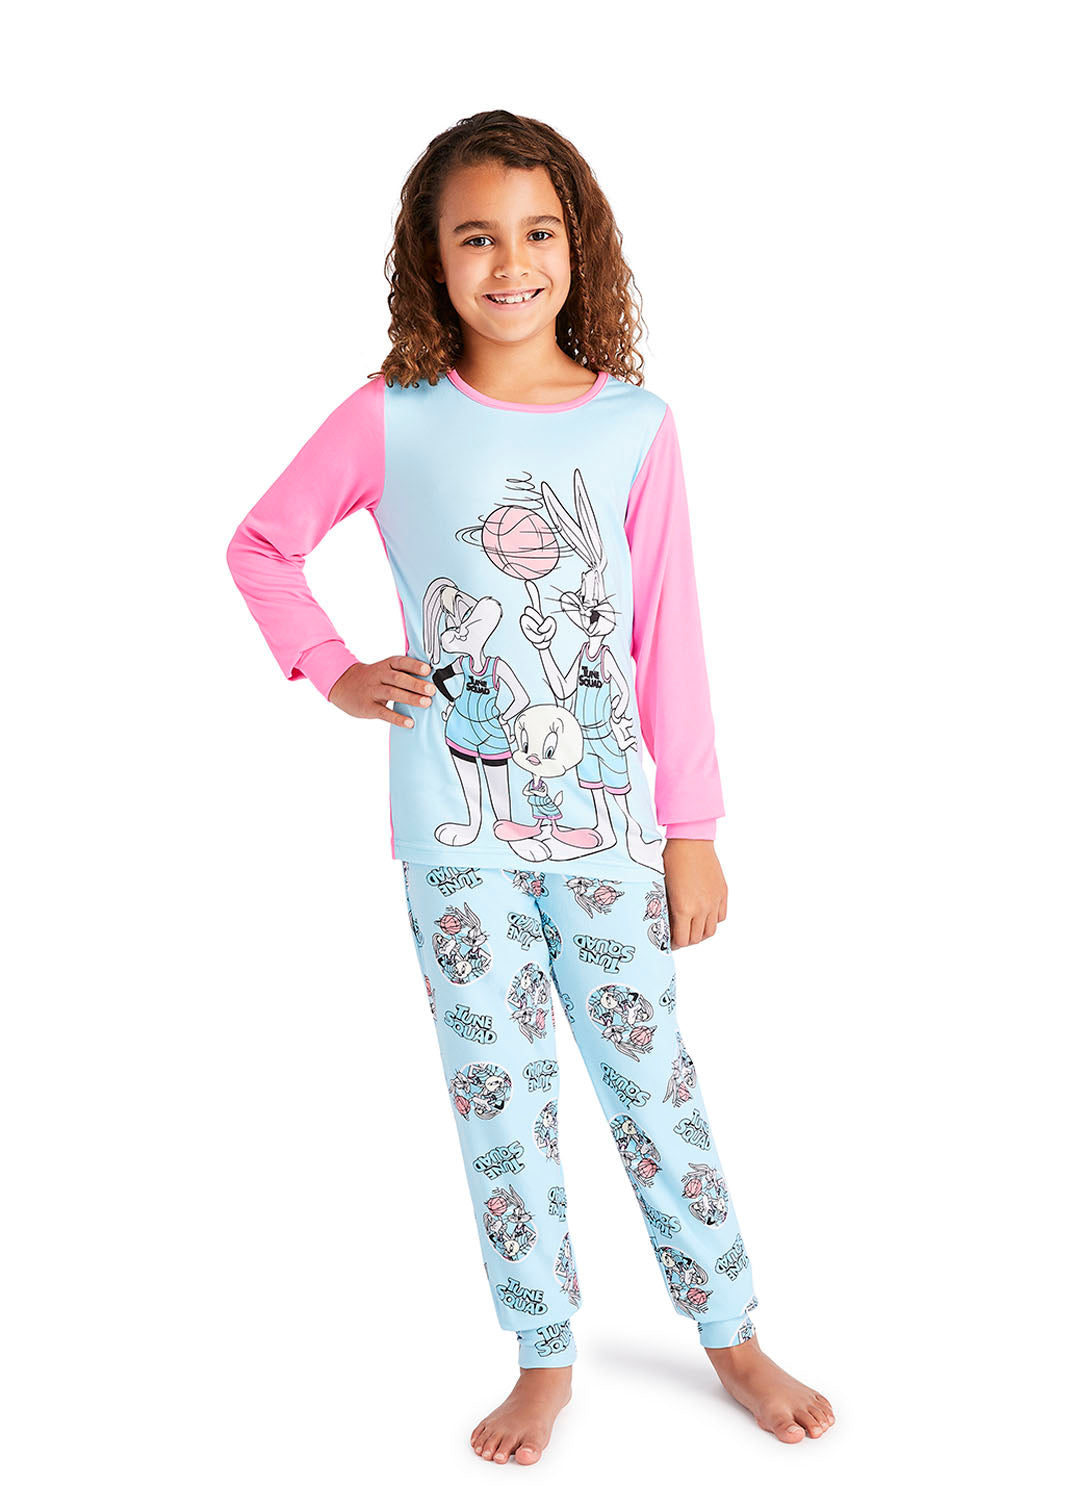 Girl wearing Space Jam 2 Pajama Set